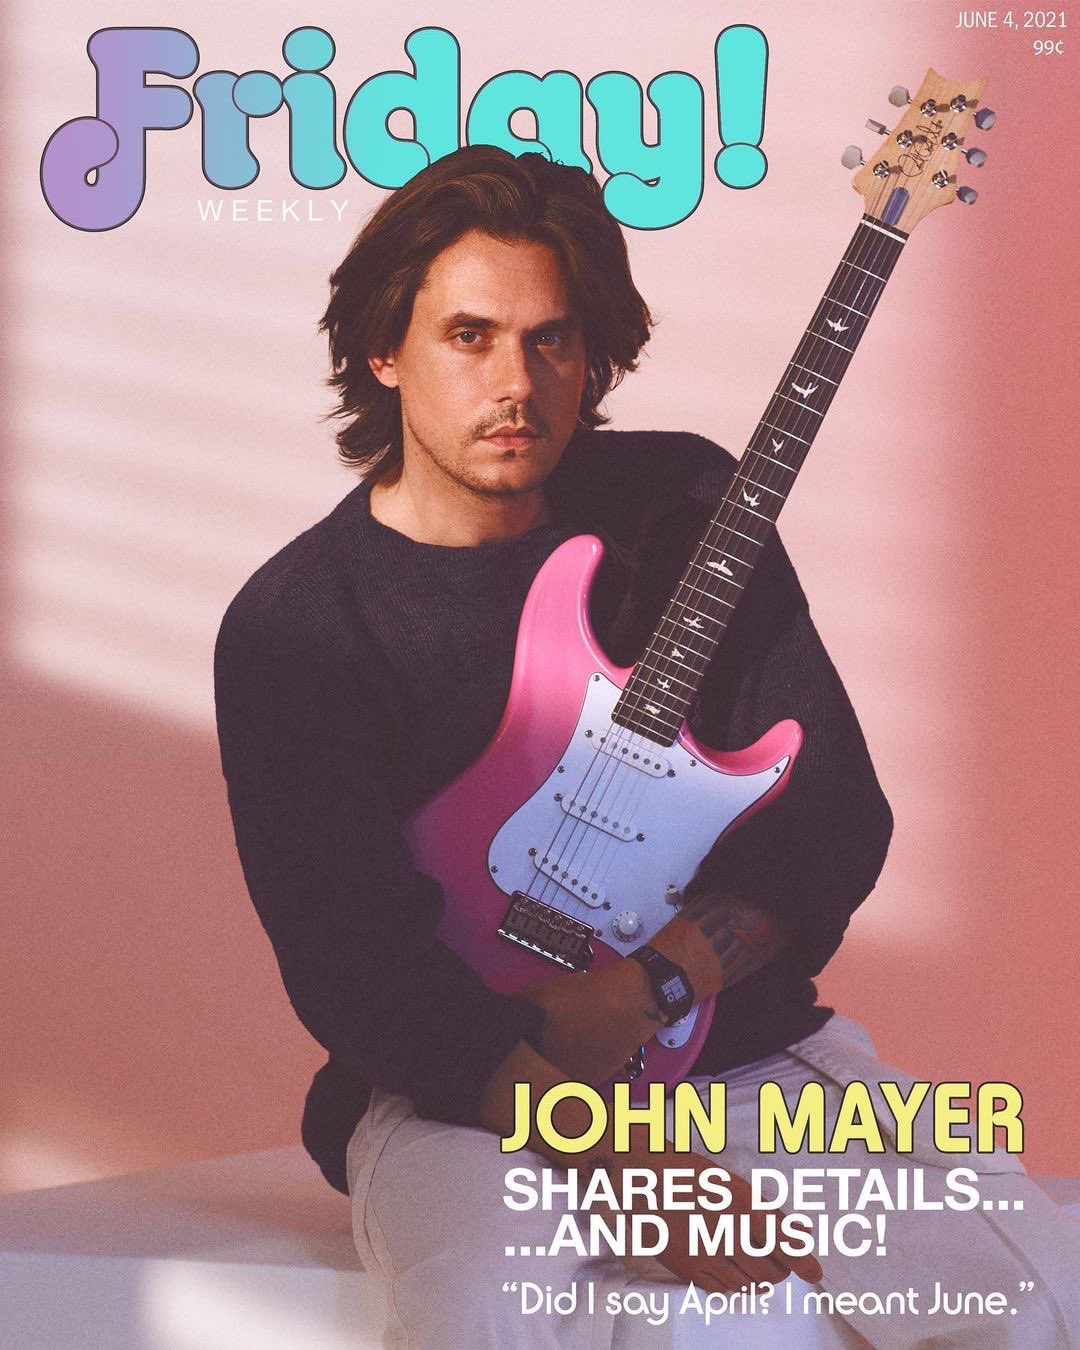 John Mayer Friday mag cover